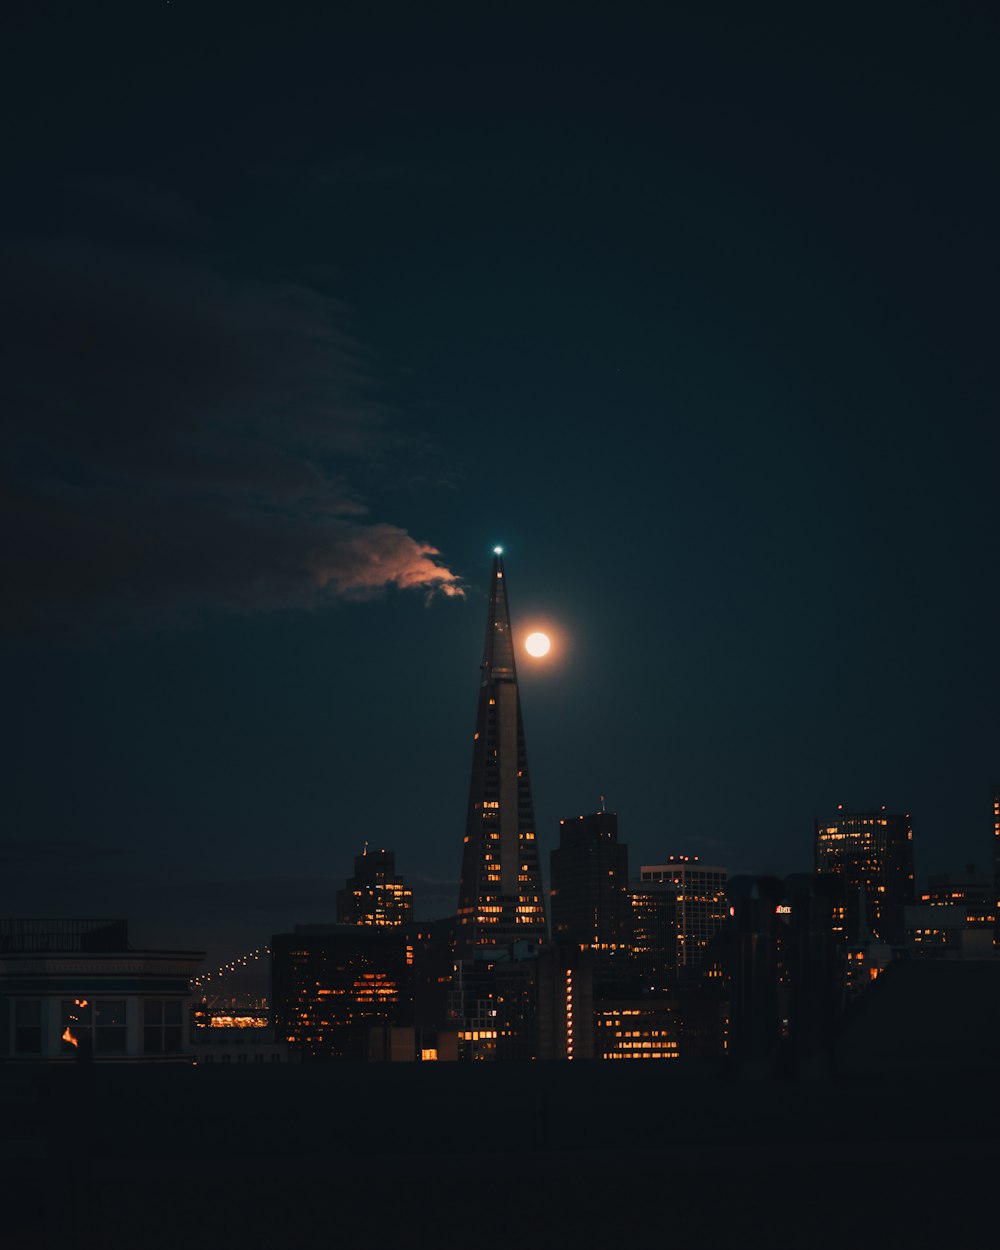 밤에 도시 위로 떠오르는 보름달